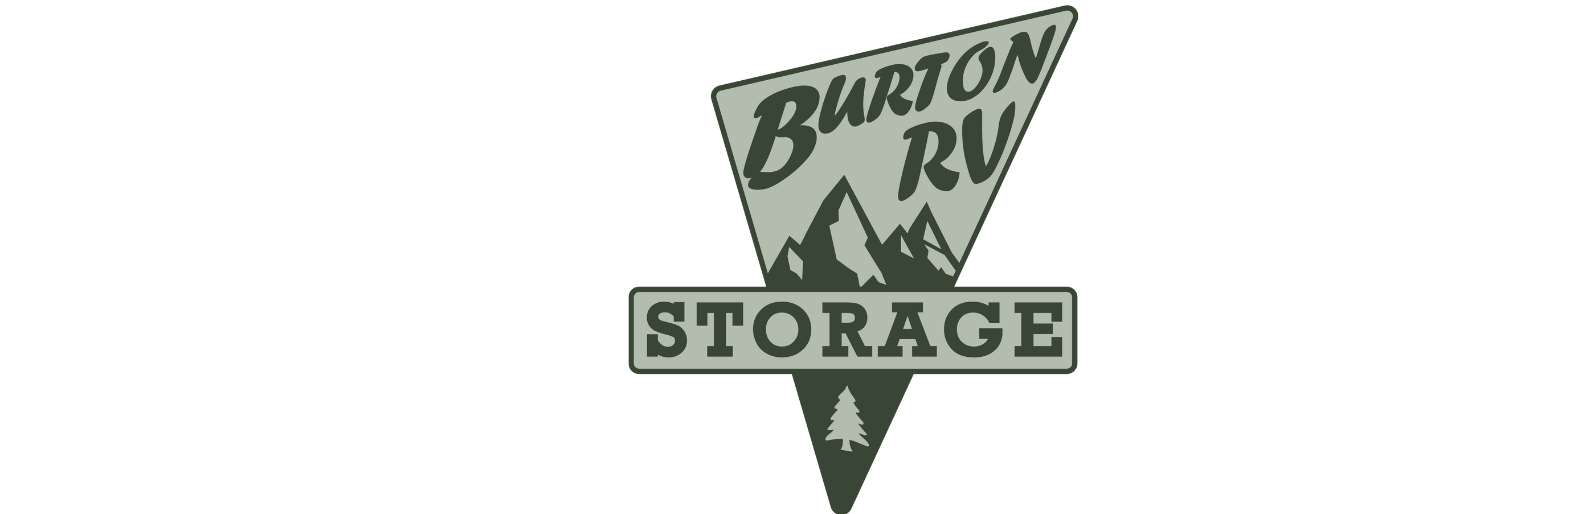 Burton RV Storage Show Low AZ Logo